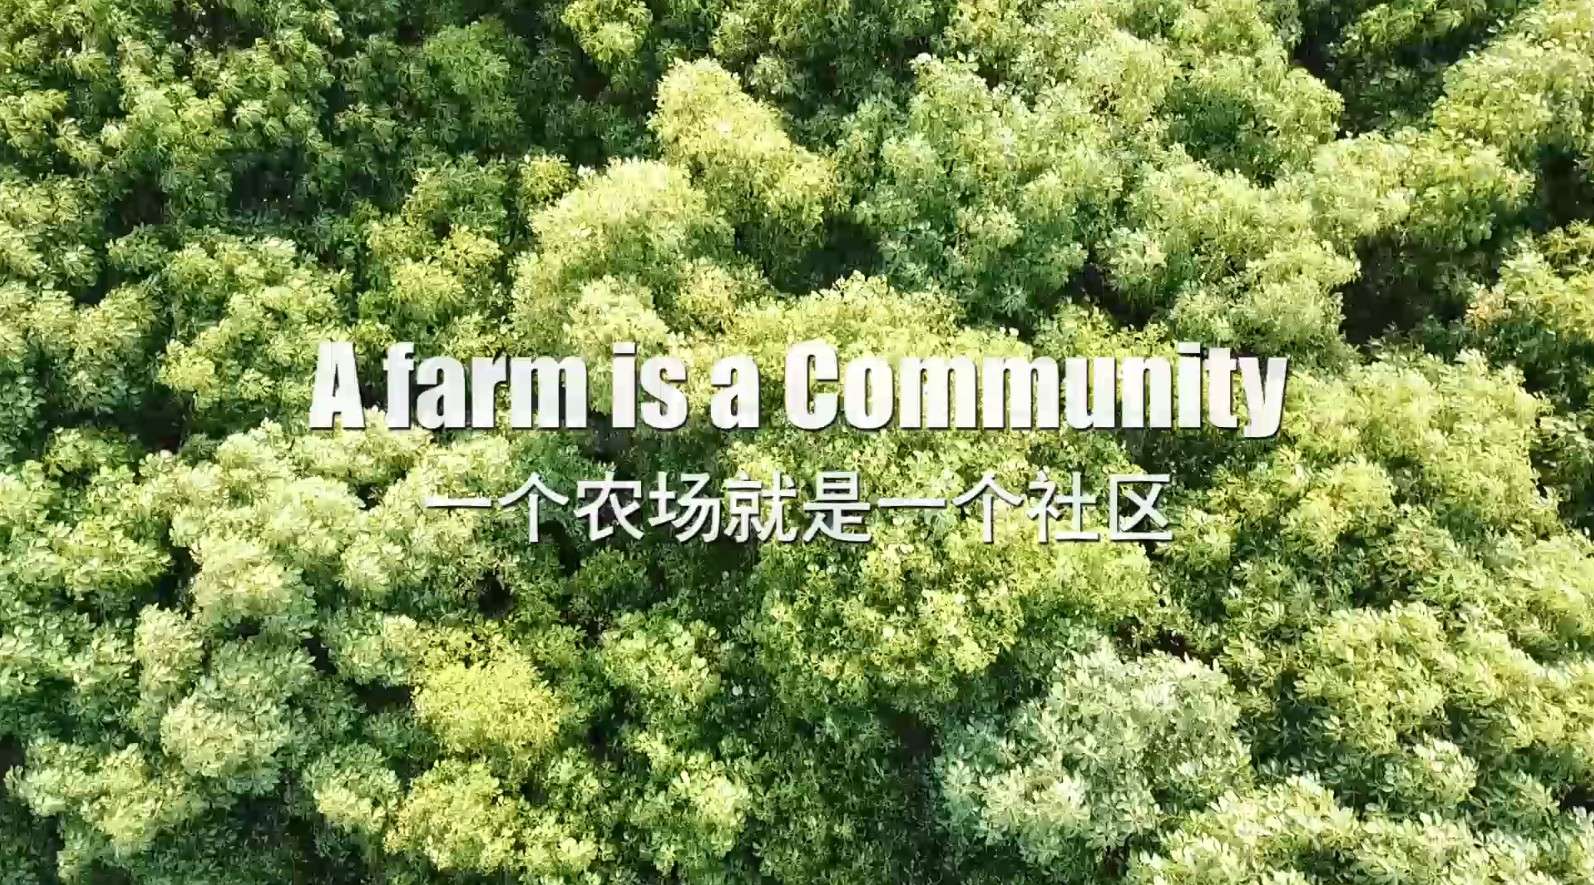 乐田家庭农场 | 一个农场就是一个社区